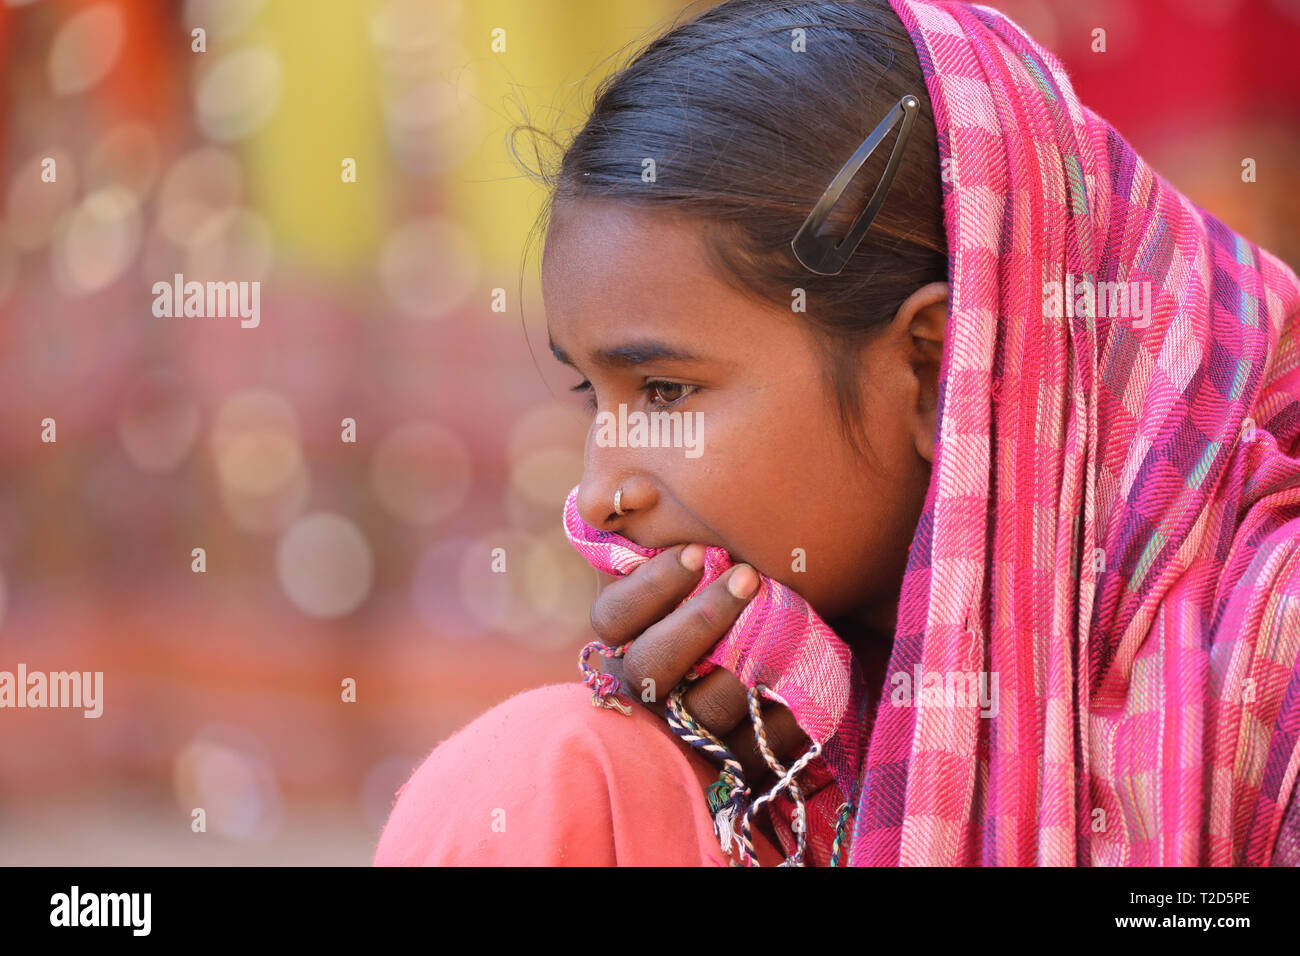 Le portrait de jeune femme en fort Jaisalmer avec colorful pink sari Banque D'Images